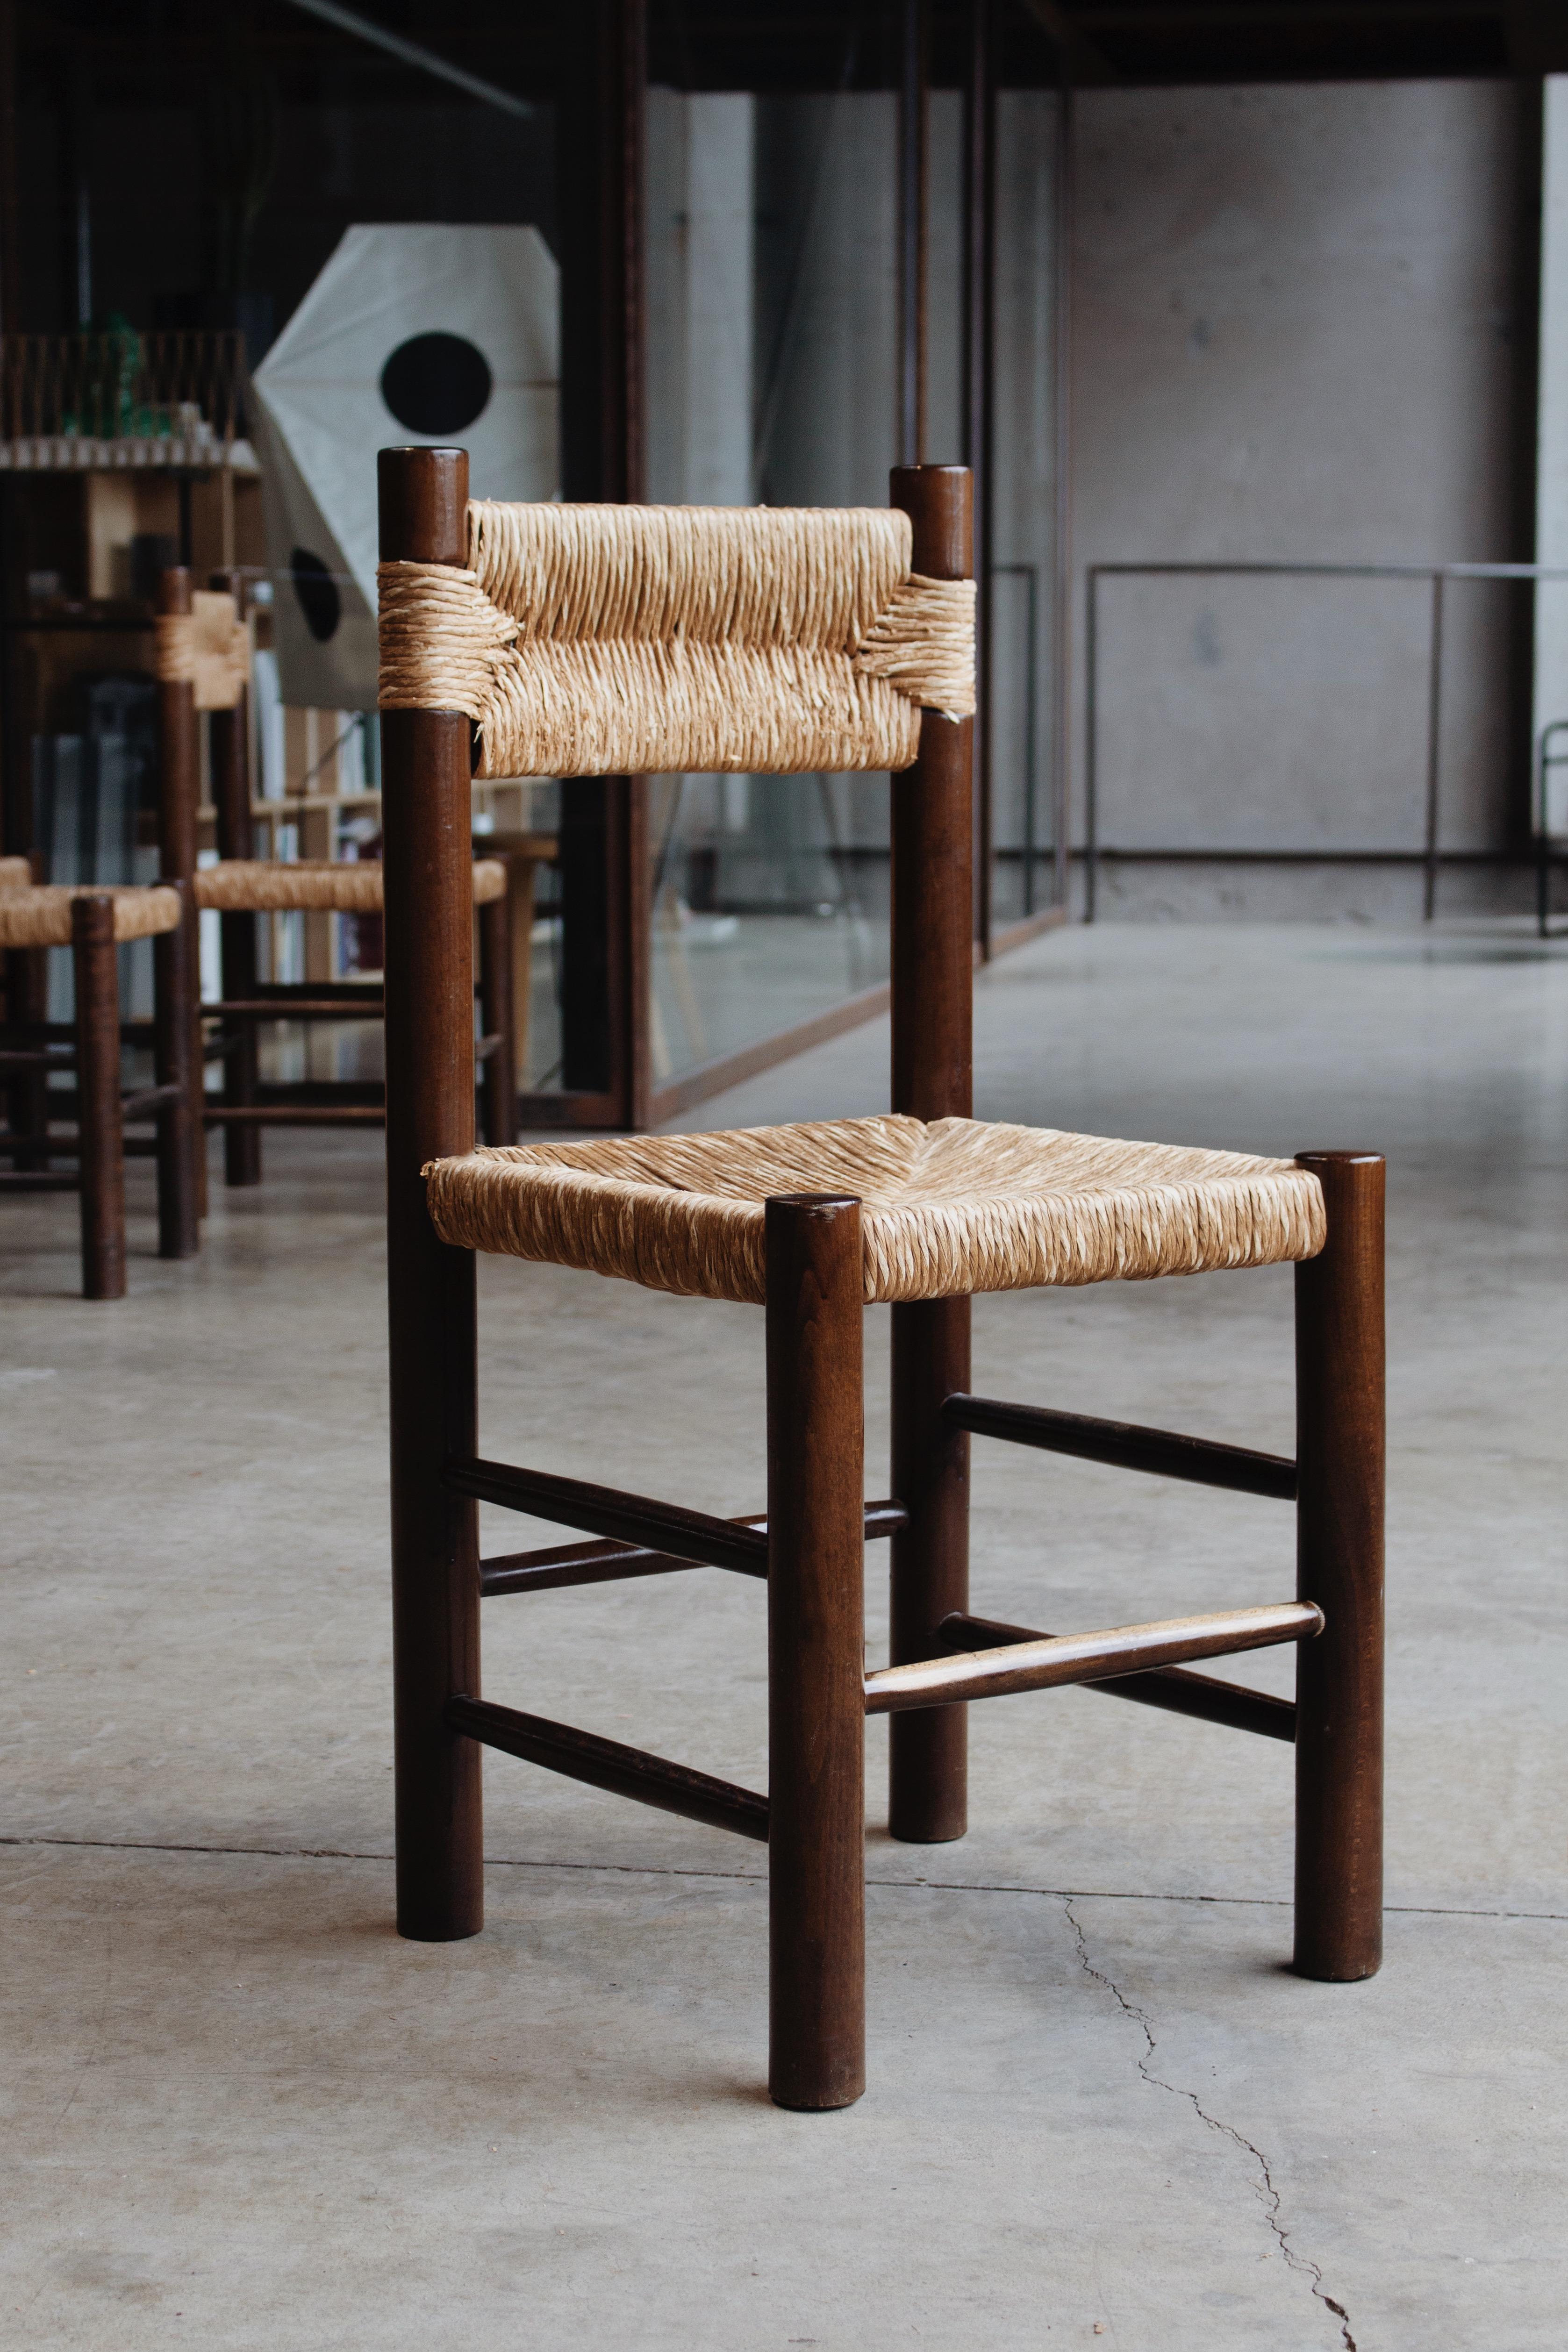 Charlotte Perriand Esszimmerstühle für Robert Sentou, Stroh und Holz, Frankreich, 1964, vierteilig.
 
Die Stühle haben ein schlichtes und zeitloses Design. Die ausgefallene Rückenlehne und der Sitz aus Stroh bilden zusammen mit der Struktur aus